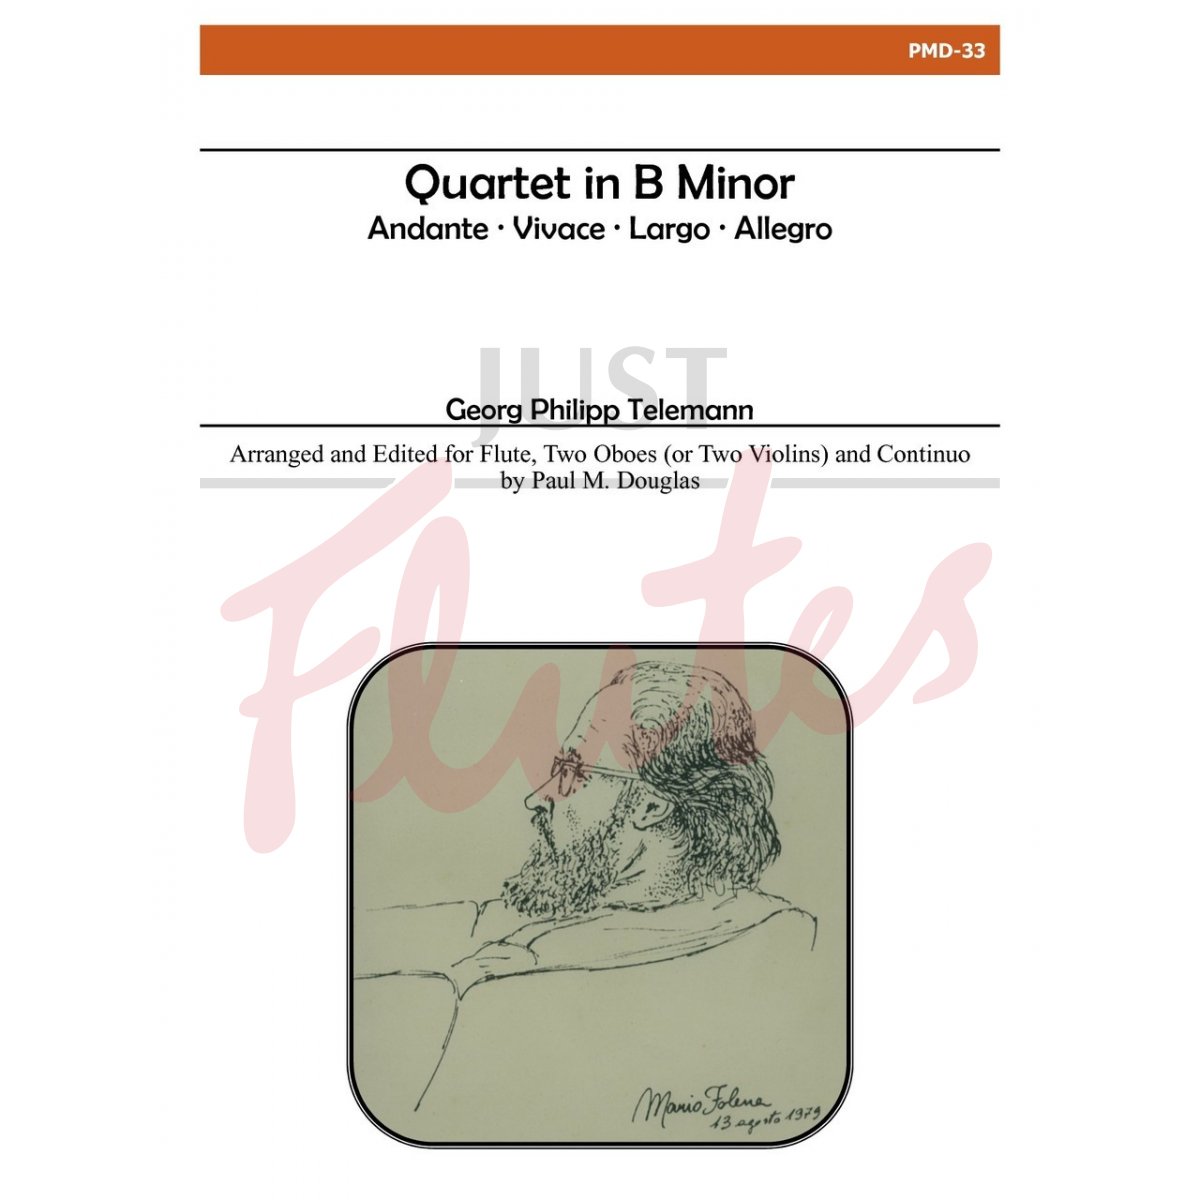 Quartet in B minor (Tafel-Musik Part 2)